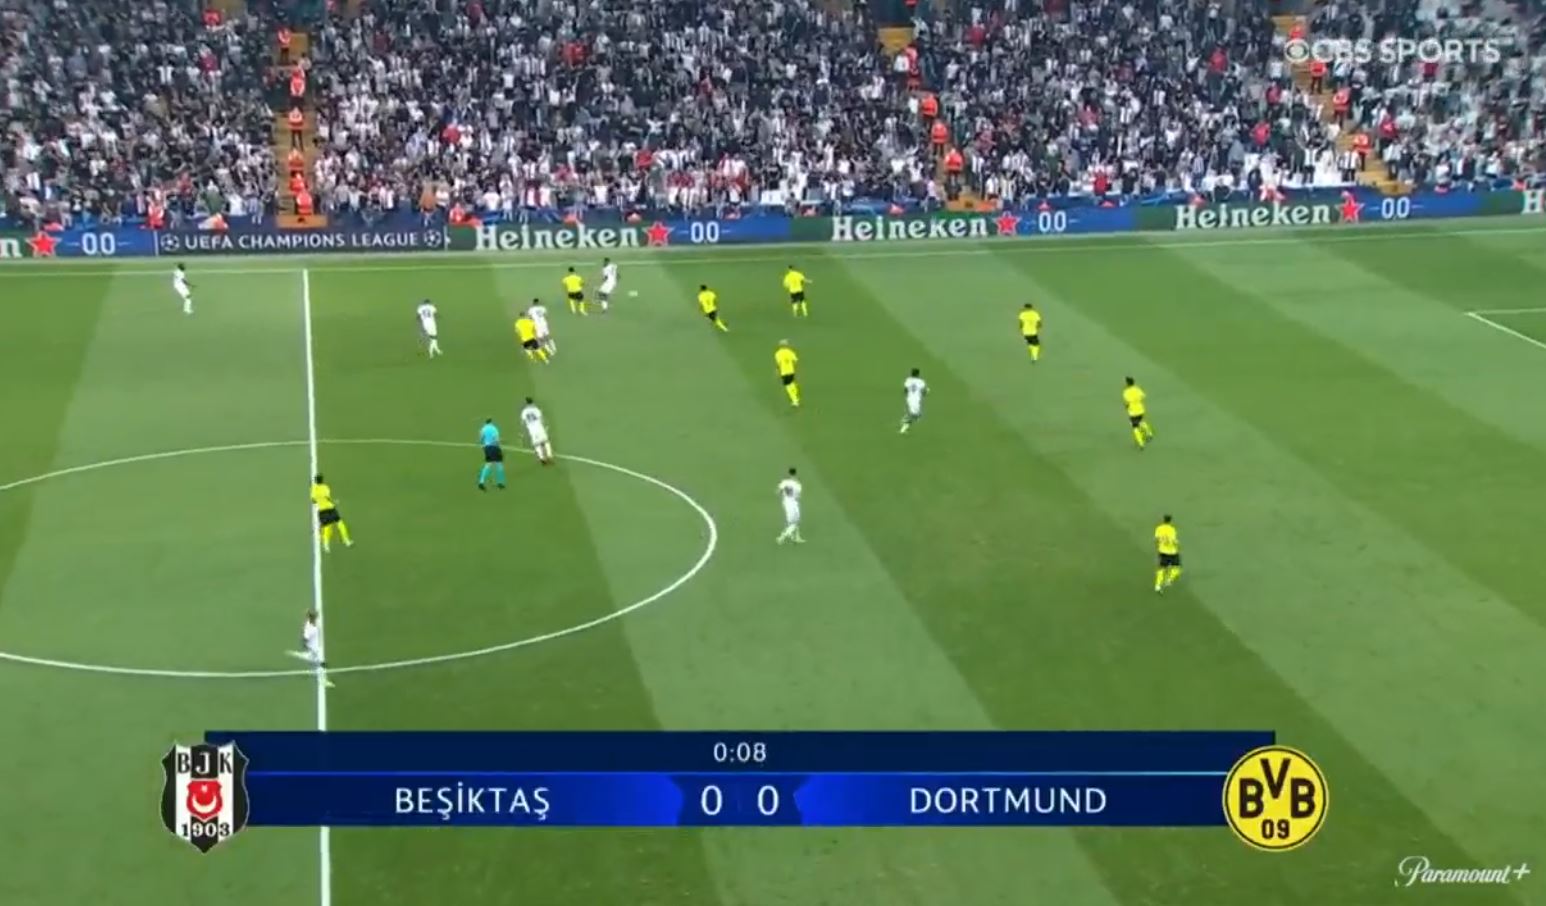 Besiktas 1-2 Borussia Dortmund 2021.09.15 (17h45) Watch Full Goals Highlight Extended